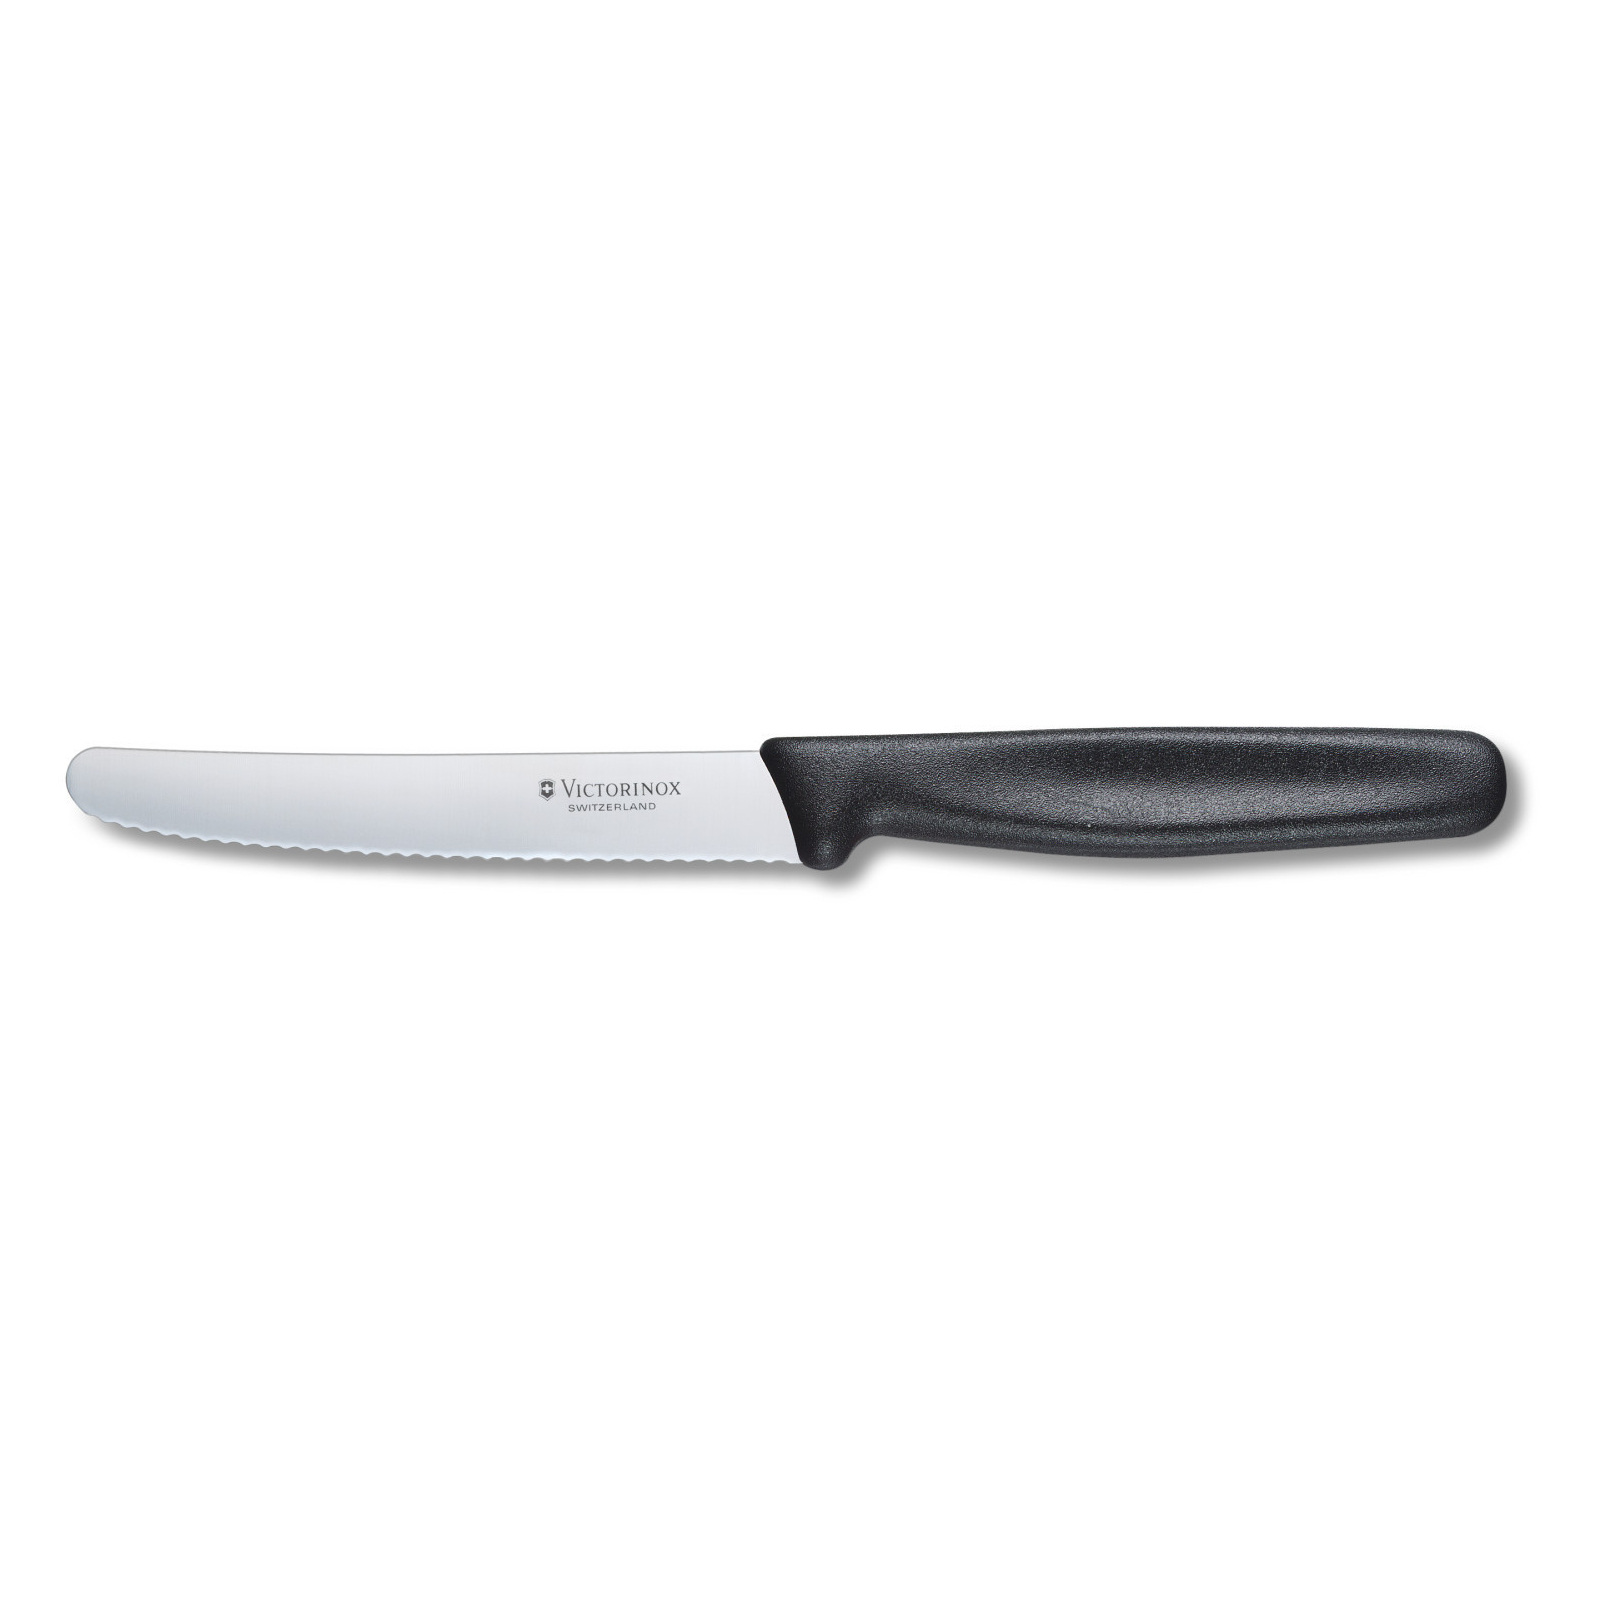 Кухонный нож Victorinox Standart для овощей 11 см, с волнистым лезвием, черный (5.0833)